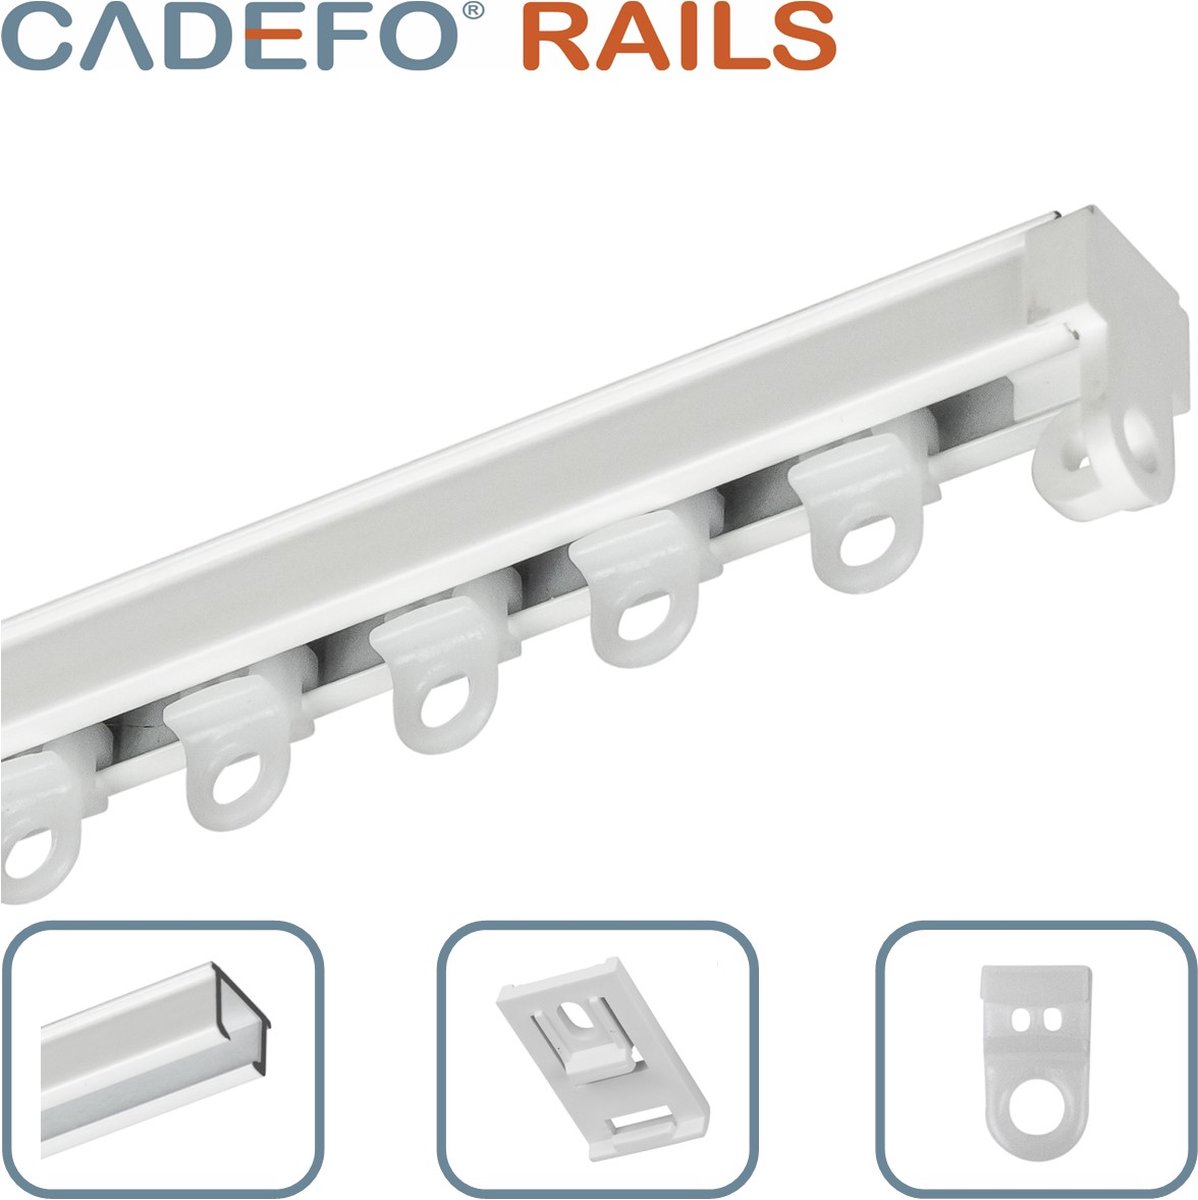 CADEFO RAILS (101 - 150 cm) Gordijnrails - Compleet op maat! - UIT 1 STUK - Leverbaar tot 6 meter - Plafondbevestiging - Lengte 141 cm